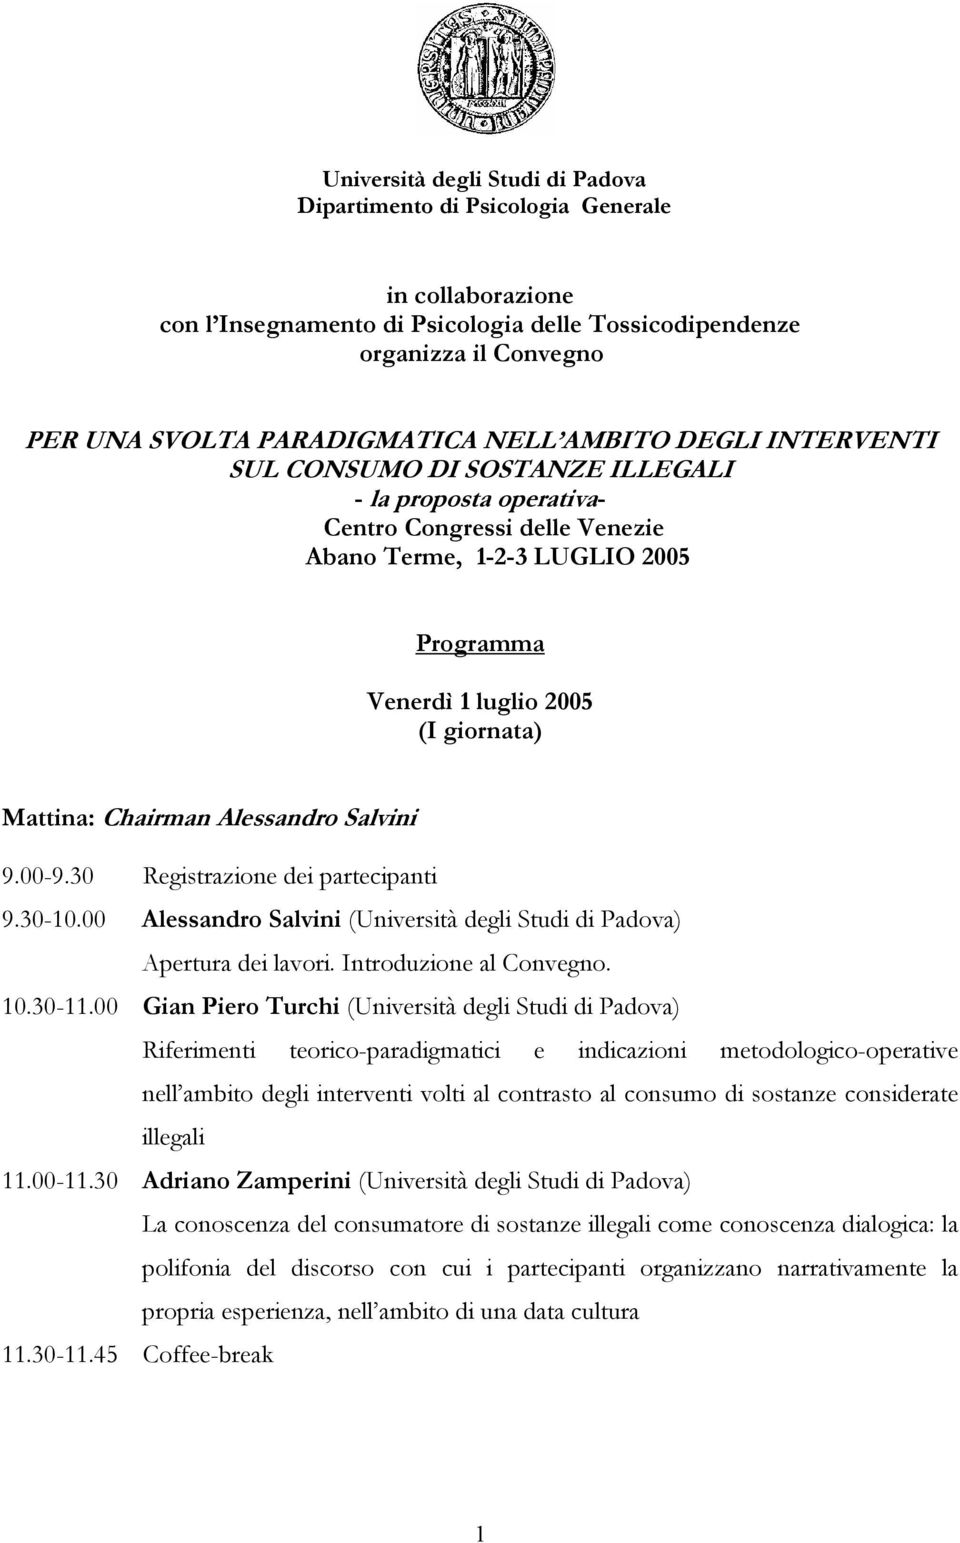 Chairman Alessandro Salvini 9.00-9.30 Registrazione dei partecipanti 9.30-10.00 Alessandro Salvini (Università degli Studi di Padova) Apertura dei lavori. Introduzione al Convegno. 10.30-11.